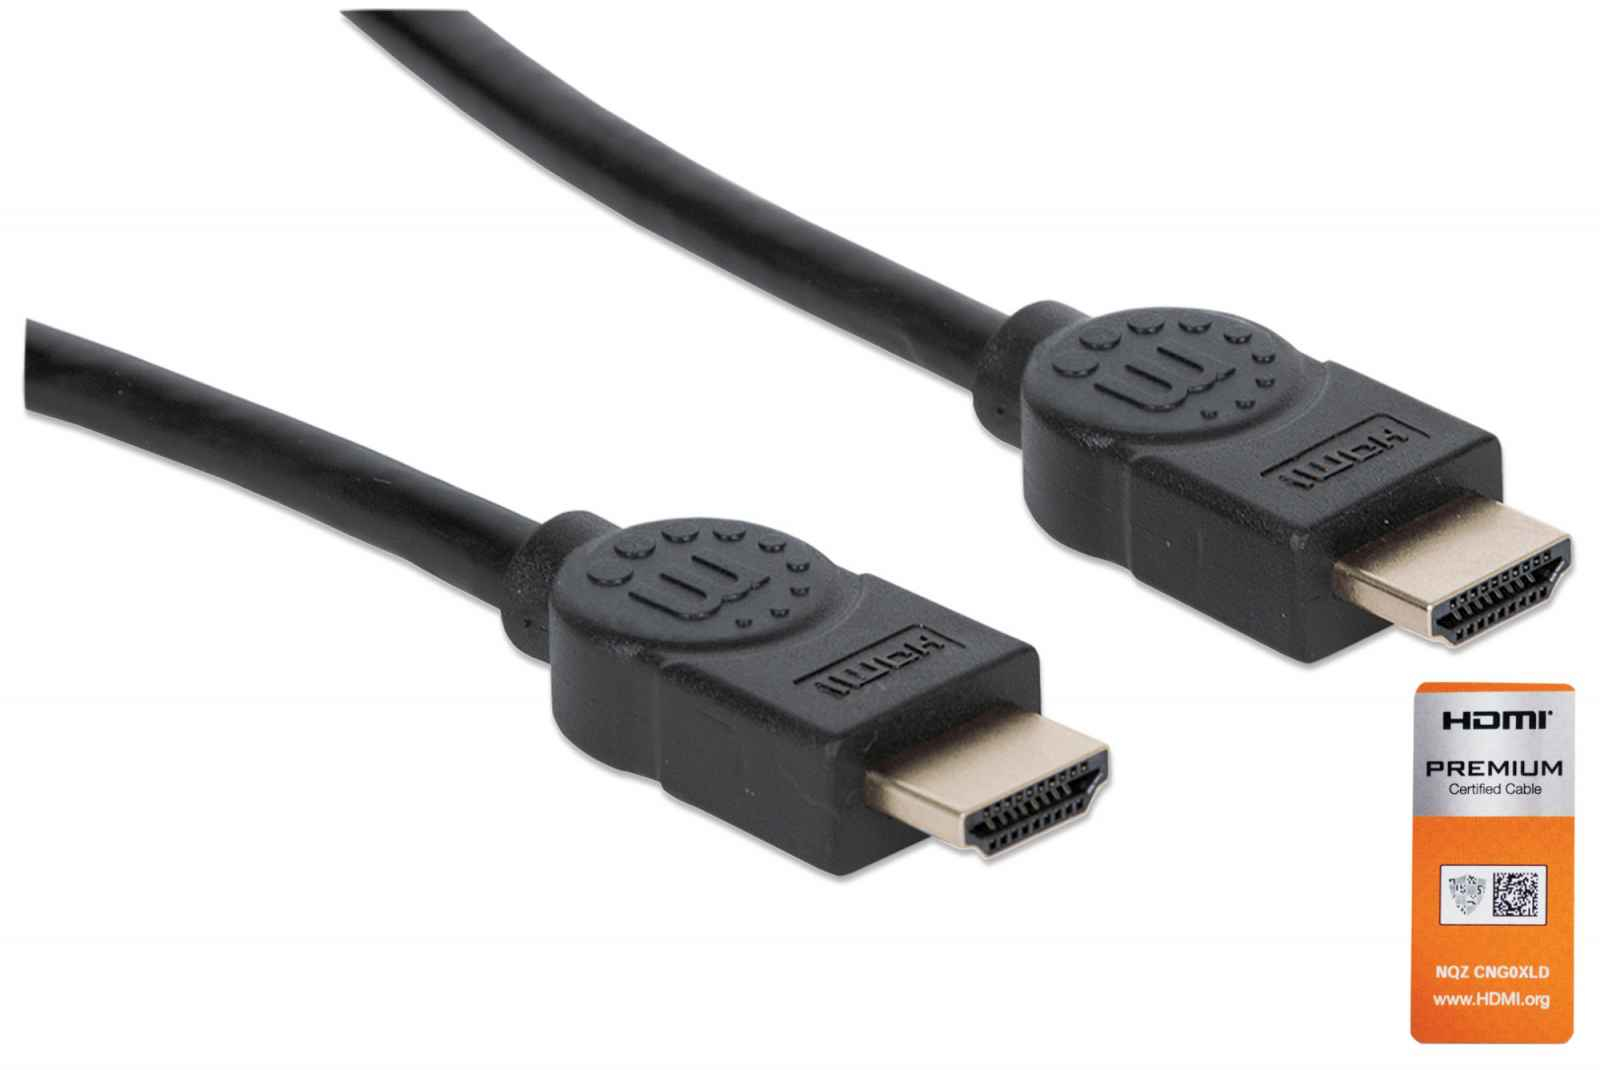 355346 Cable HDMI de Alta Velocidad con Canal Ethernet - Versión Premium 1.8m; Cable Premium HDMI Certificado